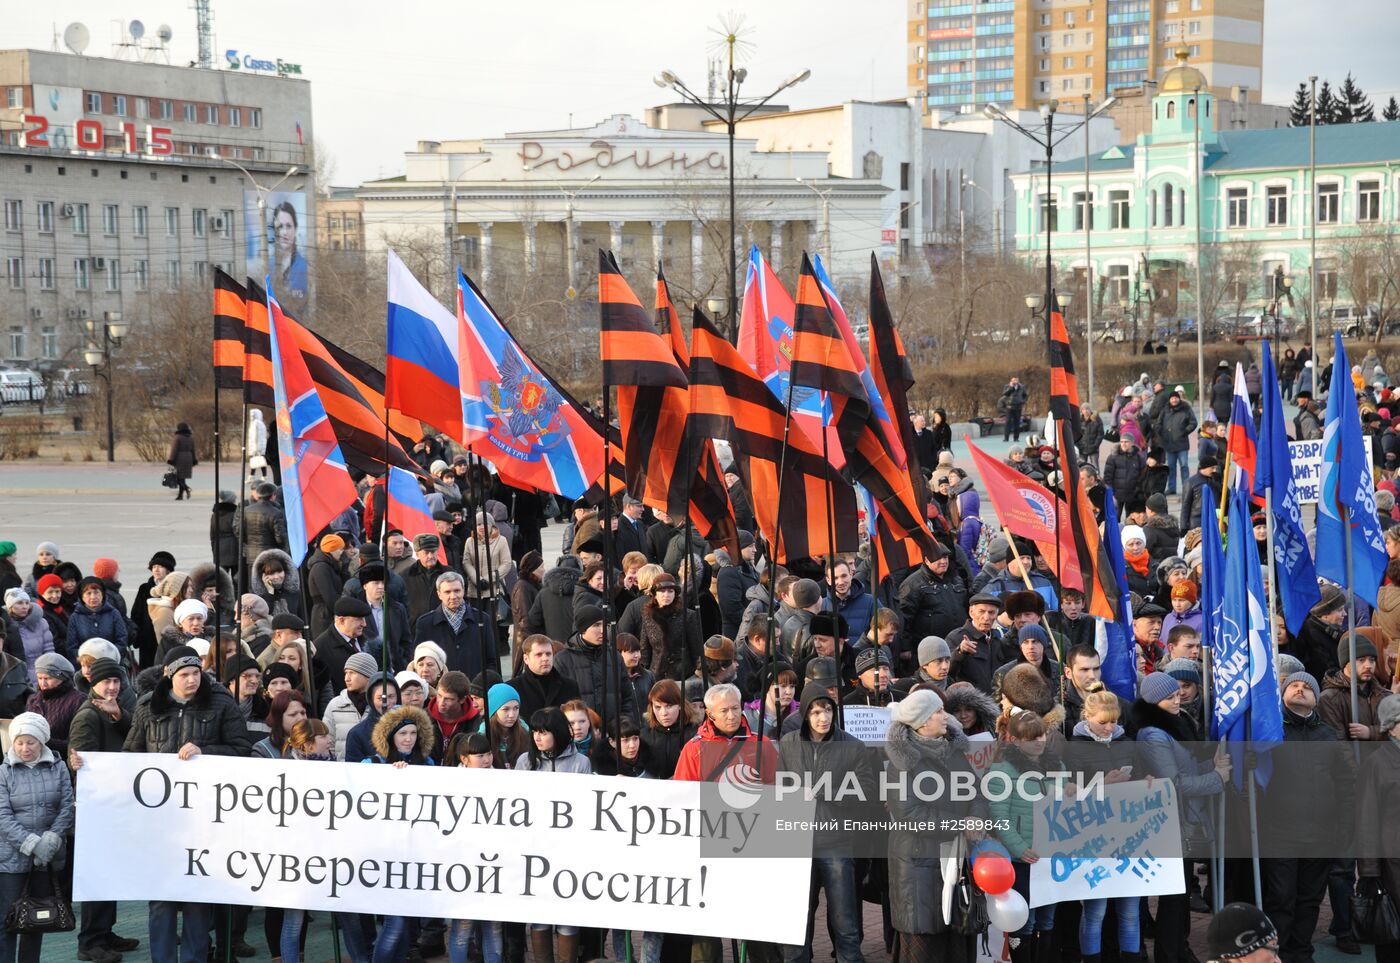 Праздничные мероприятия в честь воссоединения Крыма и Севастополя с Россией